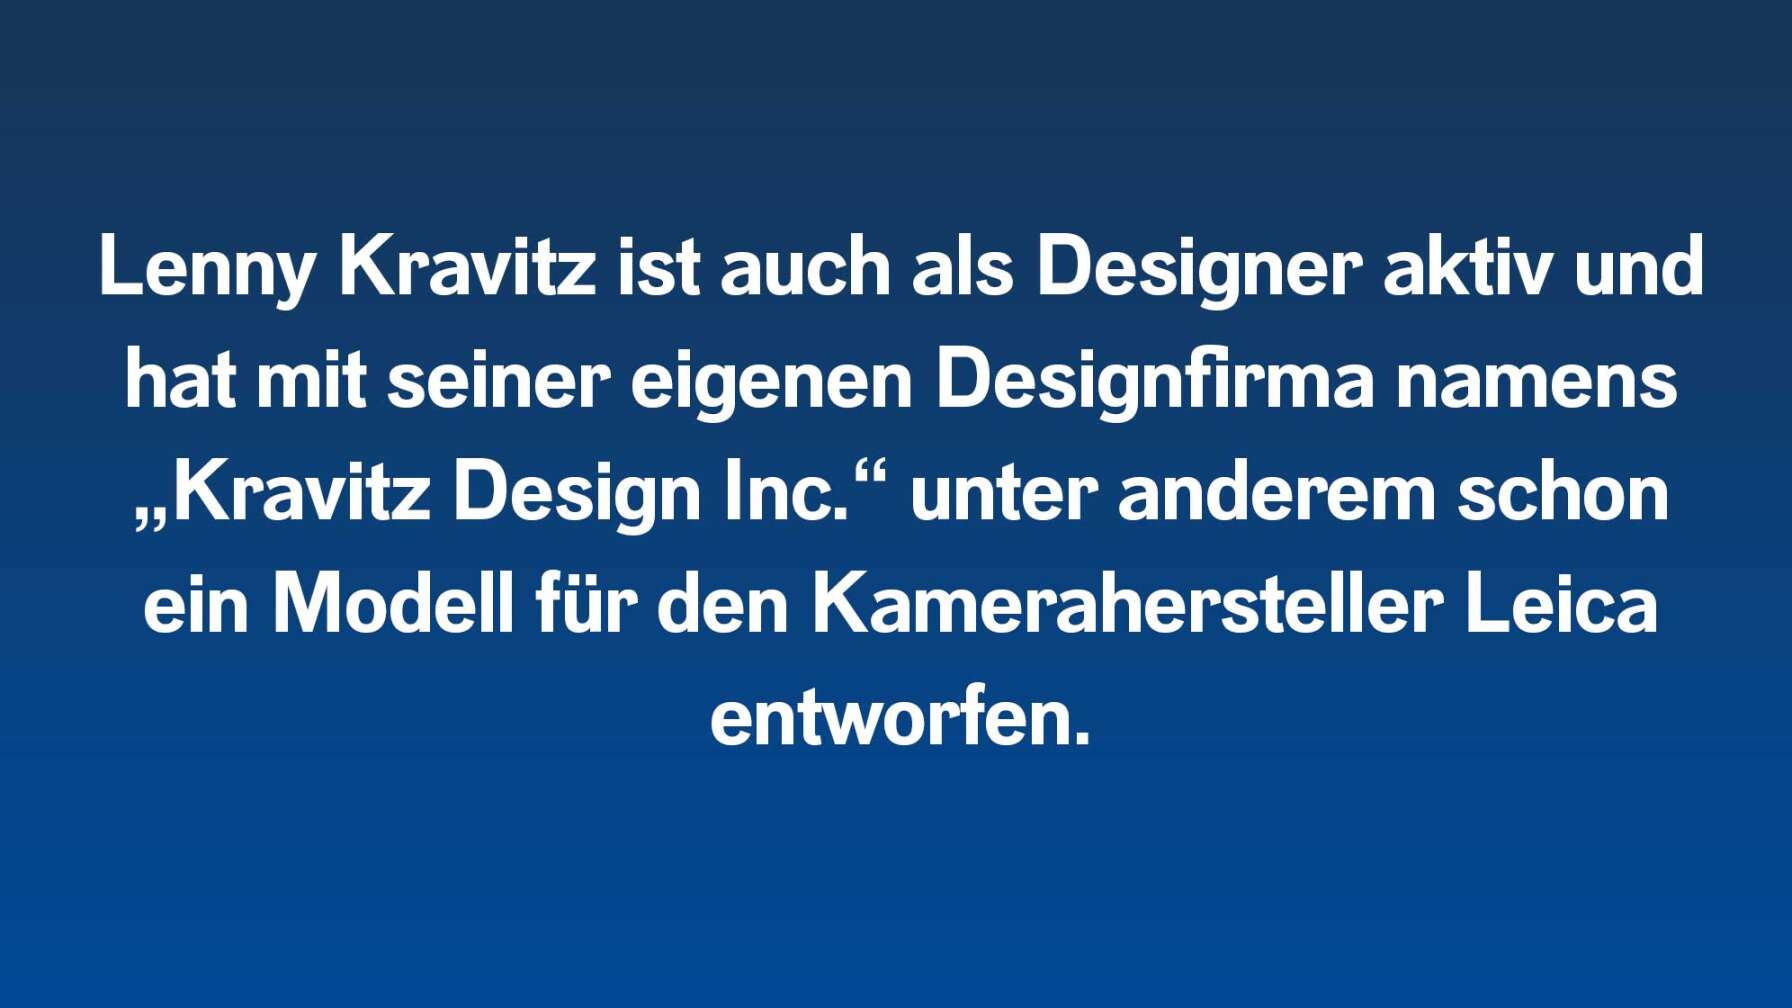 Lenny Kravitz ist auch als Designer aktiv und hat mit seiner eigenen Designfirma namens „Kravitz Design Inc.“ unter anderem schon ein Modell für den Kamerahersteller Leica entworfen.